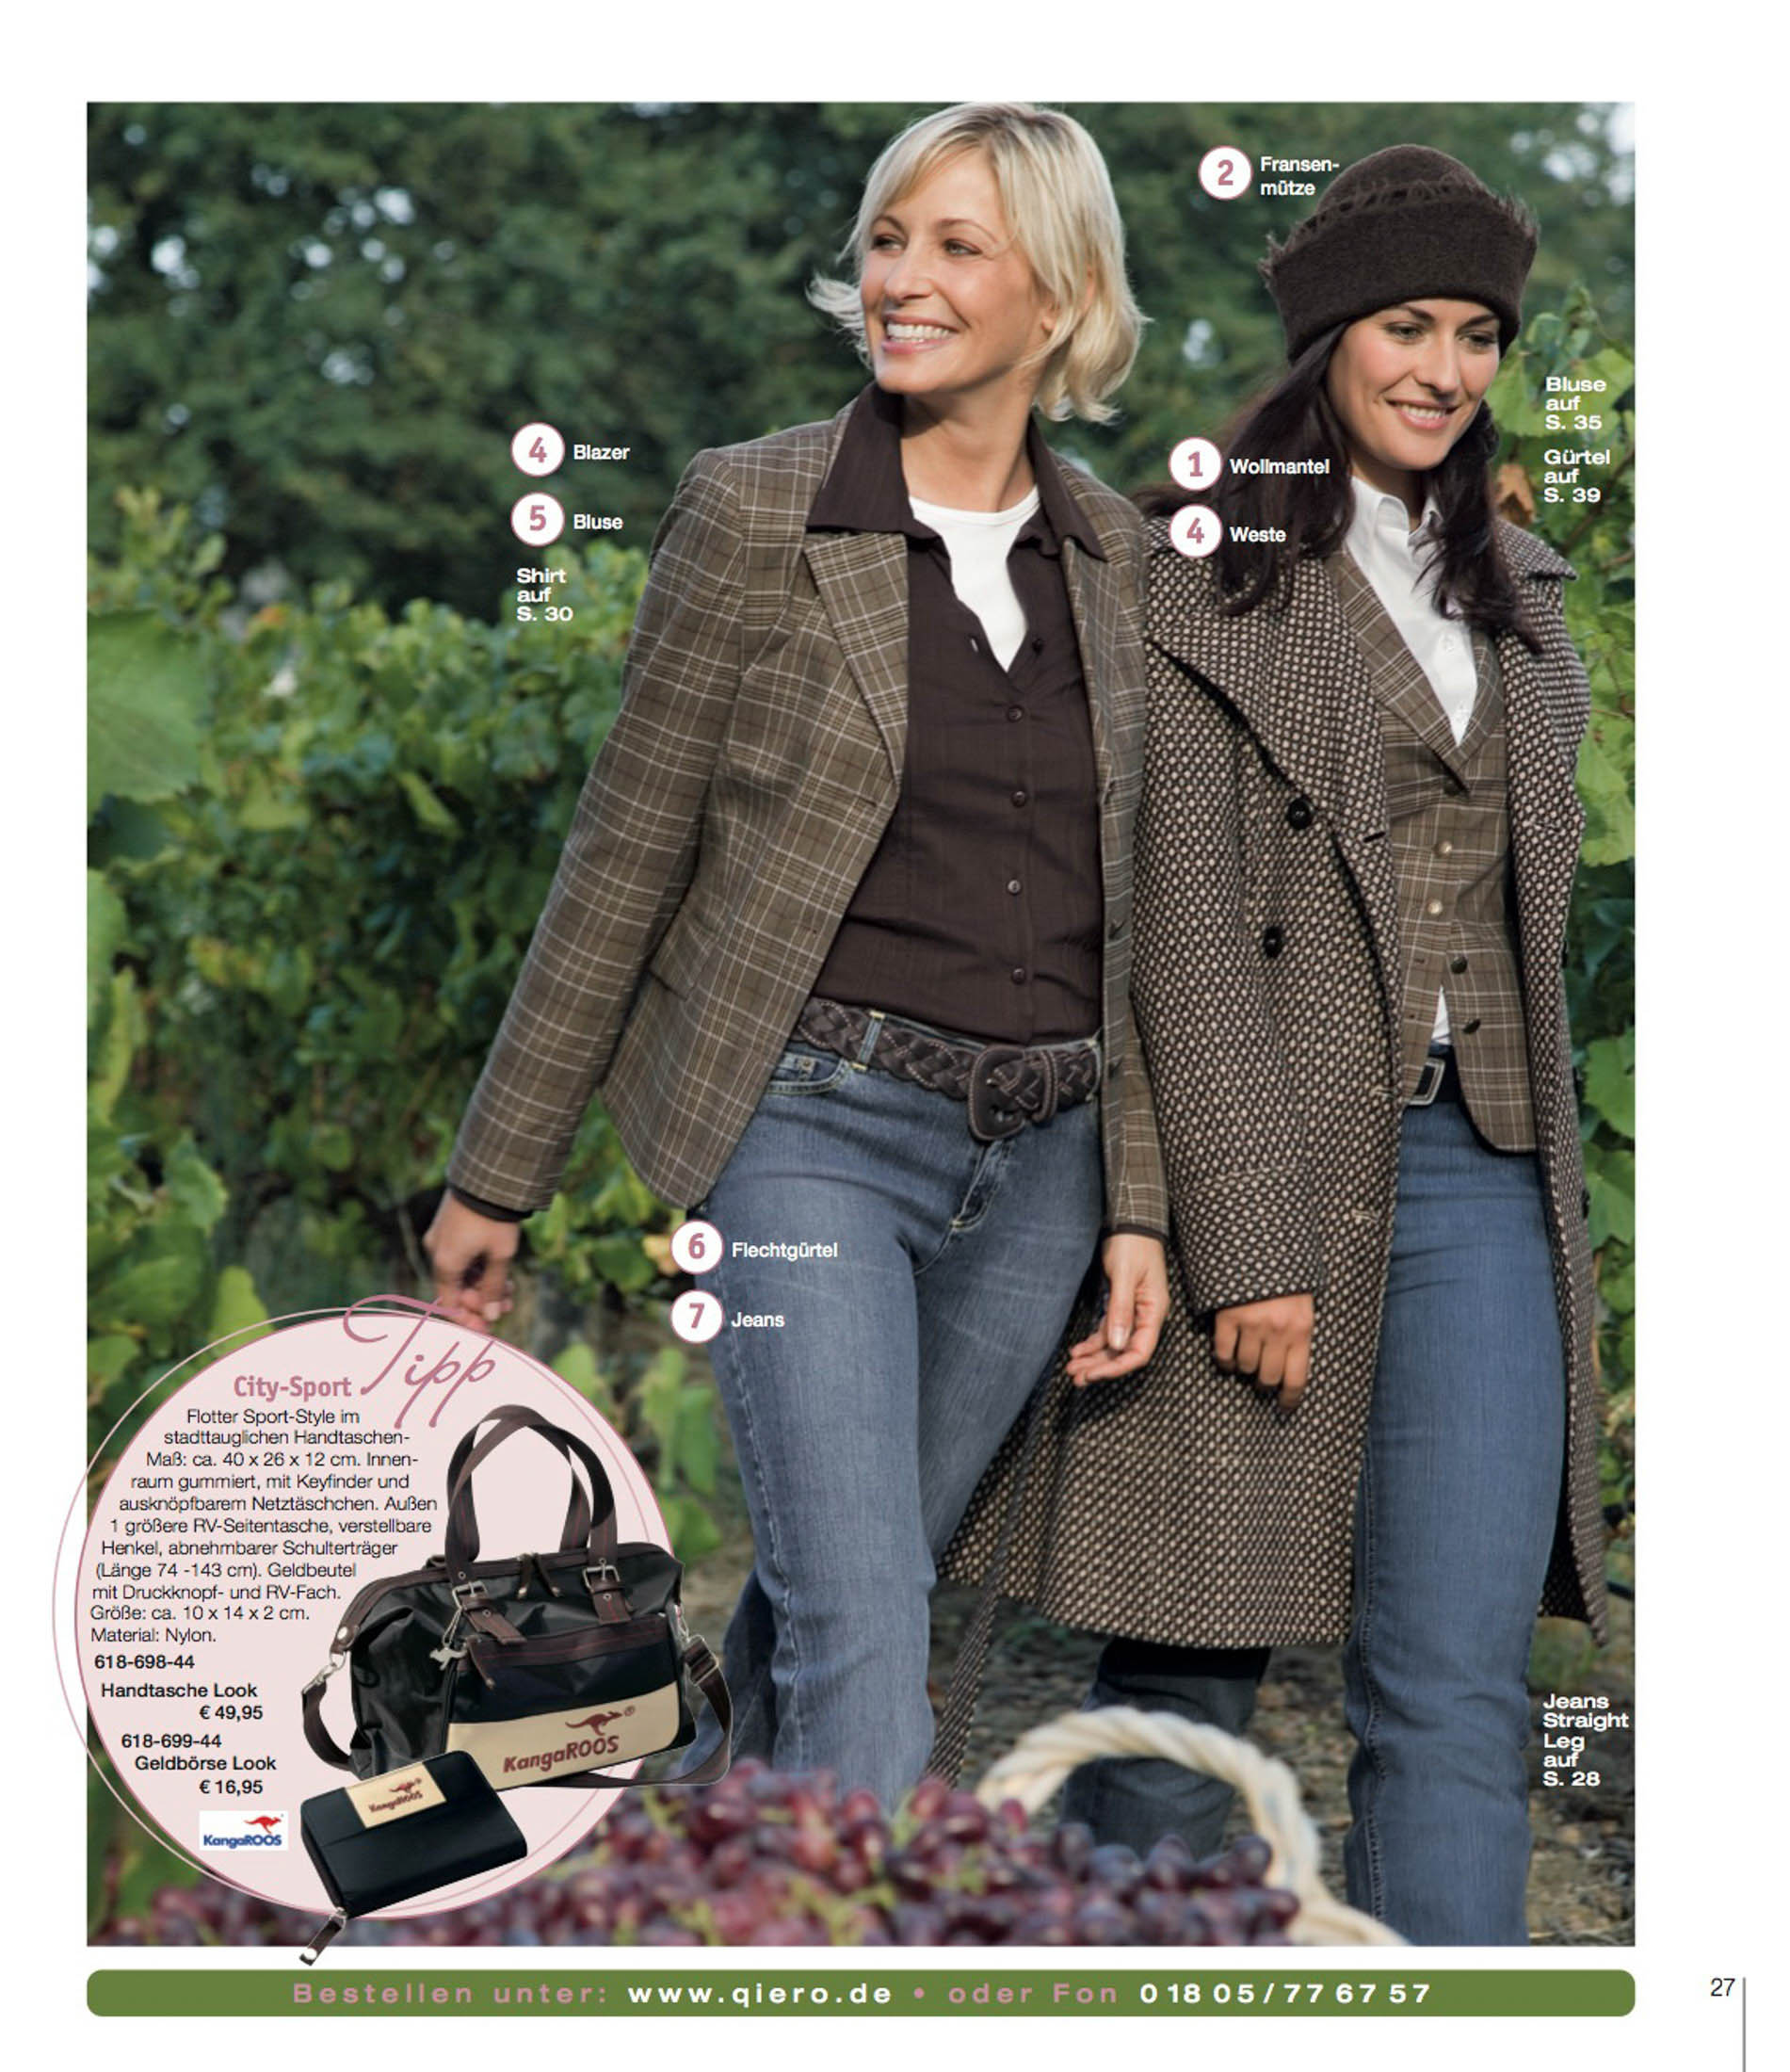 Zwei Frauen gehen glücklich durch einen Garten, eine in karierter Jacke und Jeans, die andere trägt einen passenden Mantel und eine Mütze. Beide genießen einen sonnigen Tag. © Fotografie Tomas Rodriguez